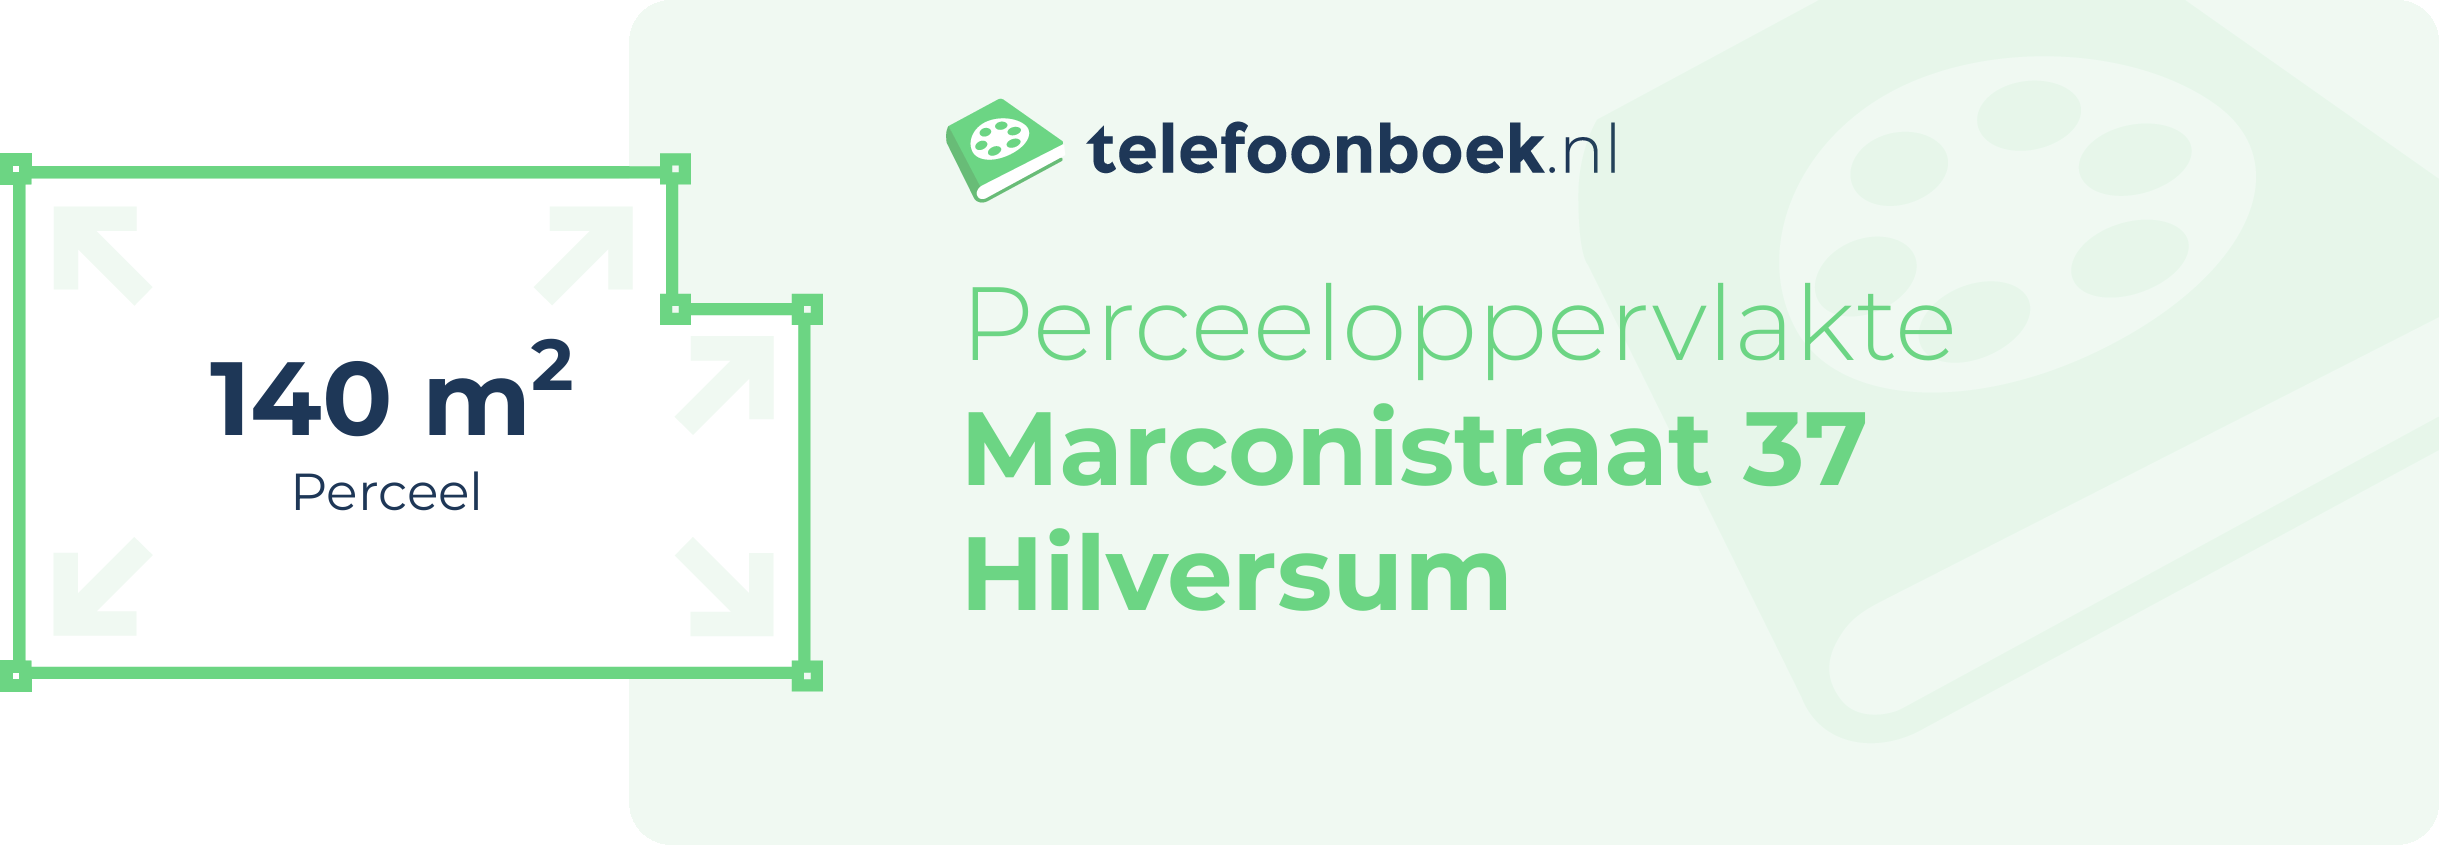 Perceeloppervlakte Marconistraat 37 Hilversum